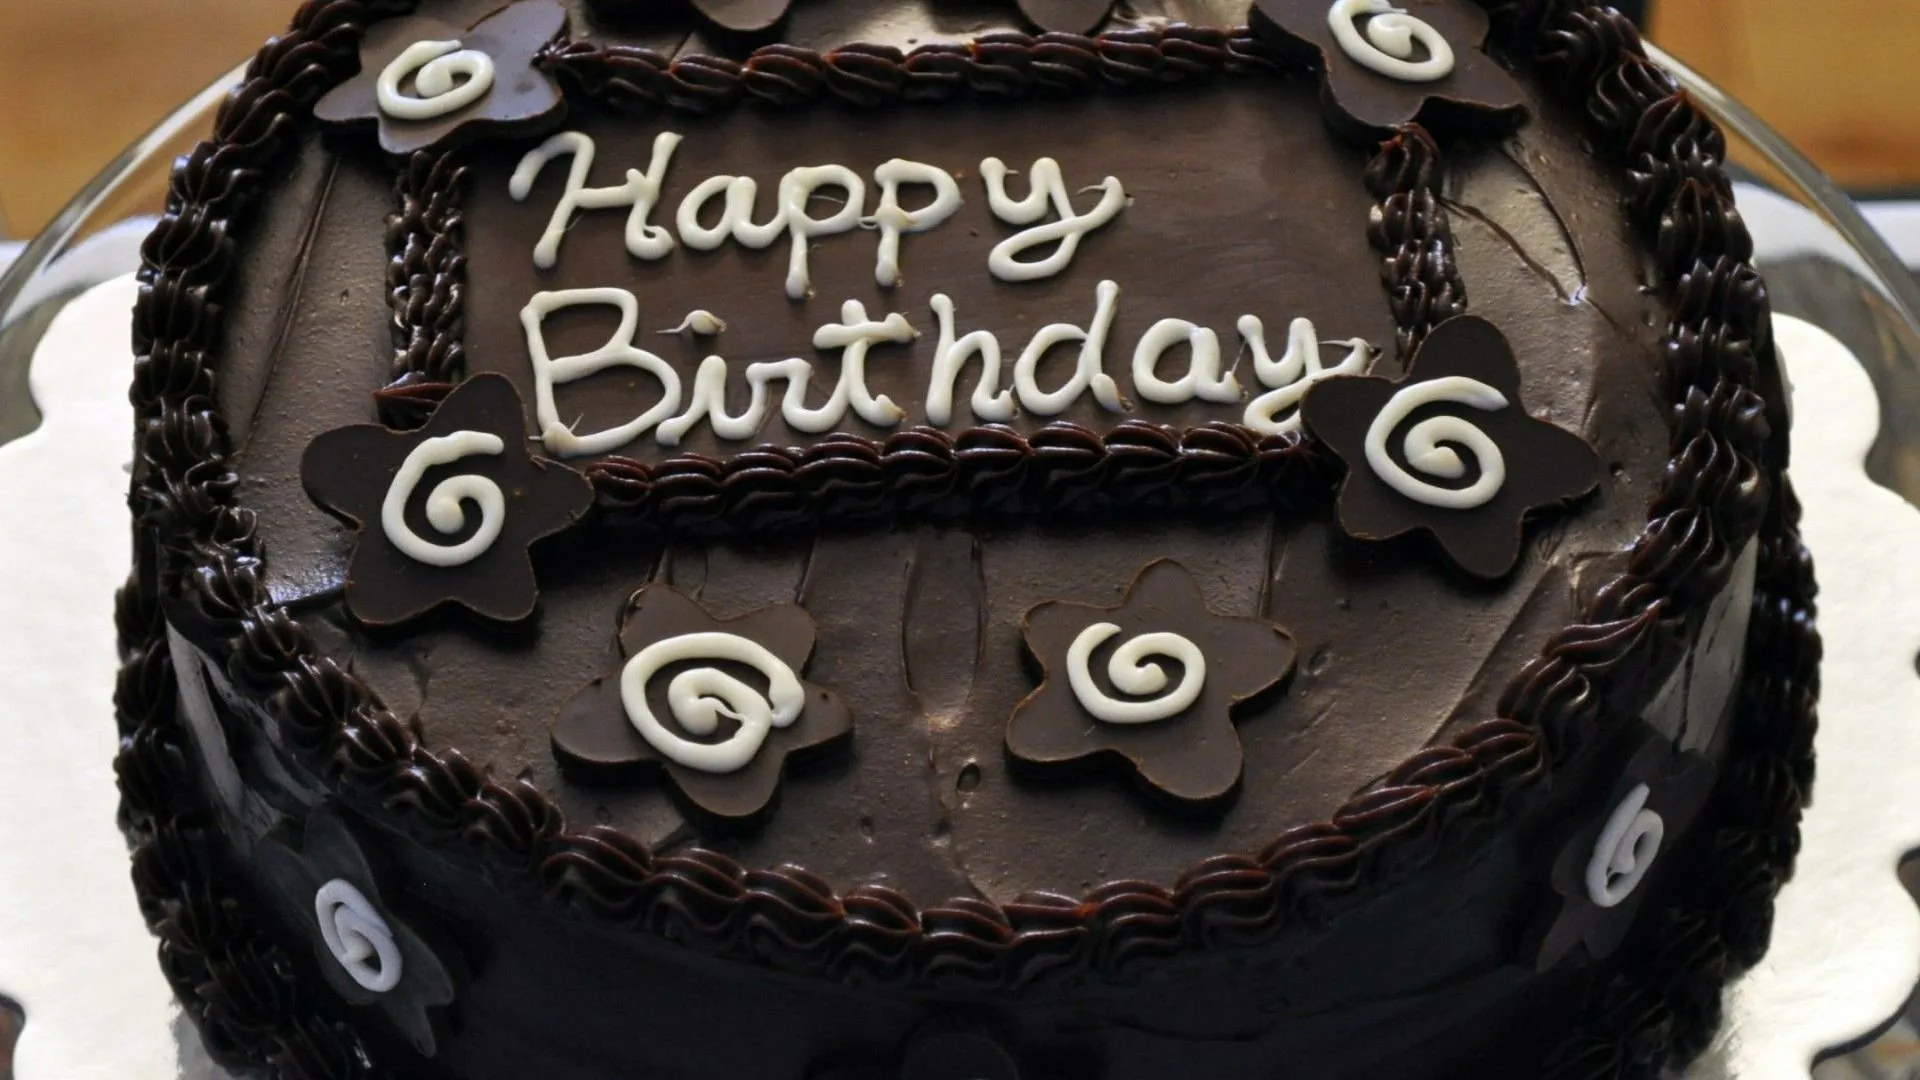 22 февраля день рождения. Торт с днем рождения!. Торт для парня. Шоколадный торт на день рождения. Надпись на торт мужчине в день рождения.